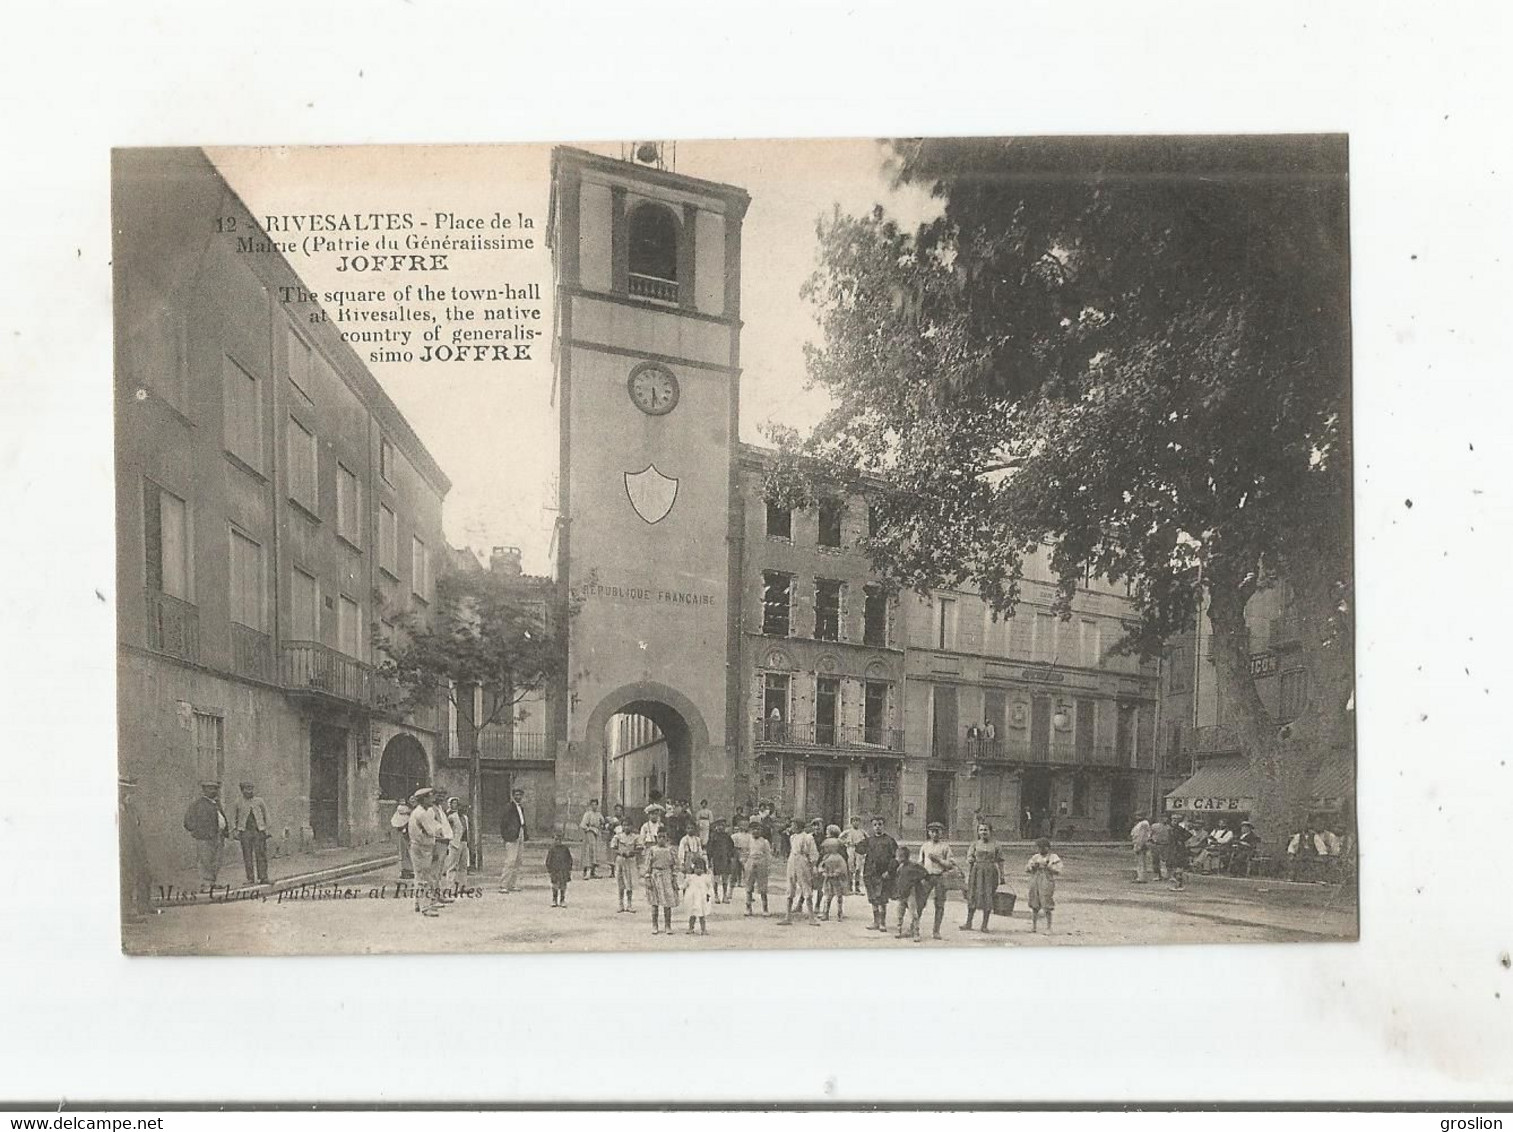 RIVESALTES 12 PLACE DE LA MAIRIE (PATRIE DU GENERALISSIME JOFFRE) 1916 (BELLE ANIMATION) - Rivesaltes